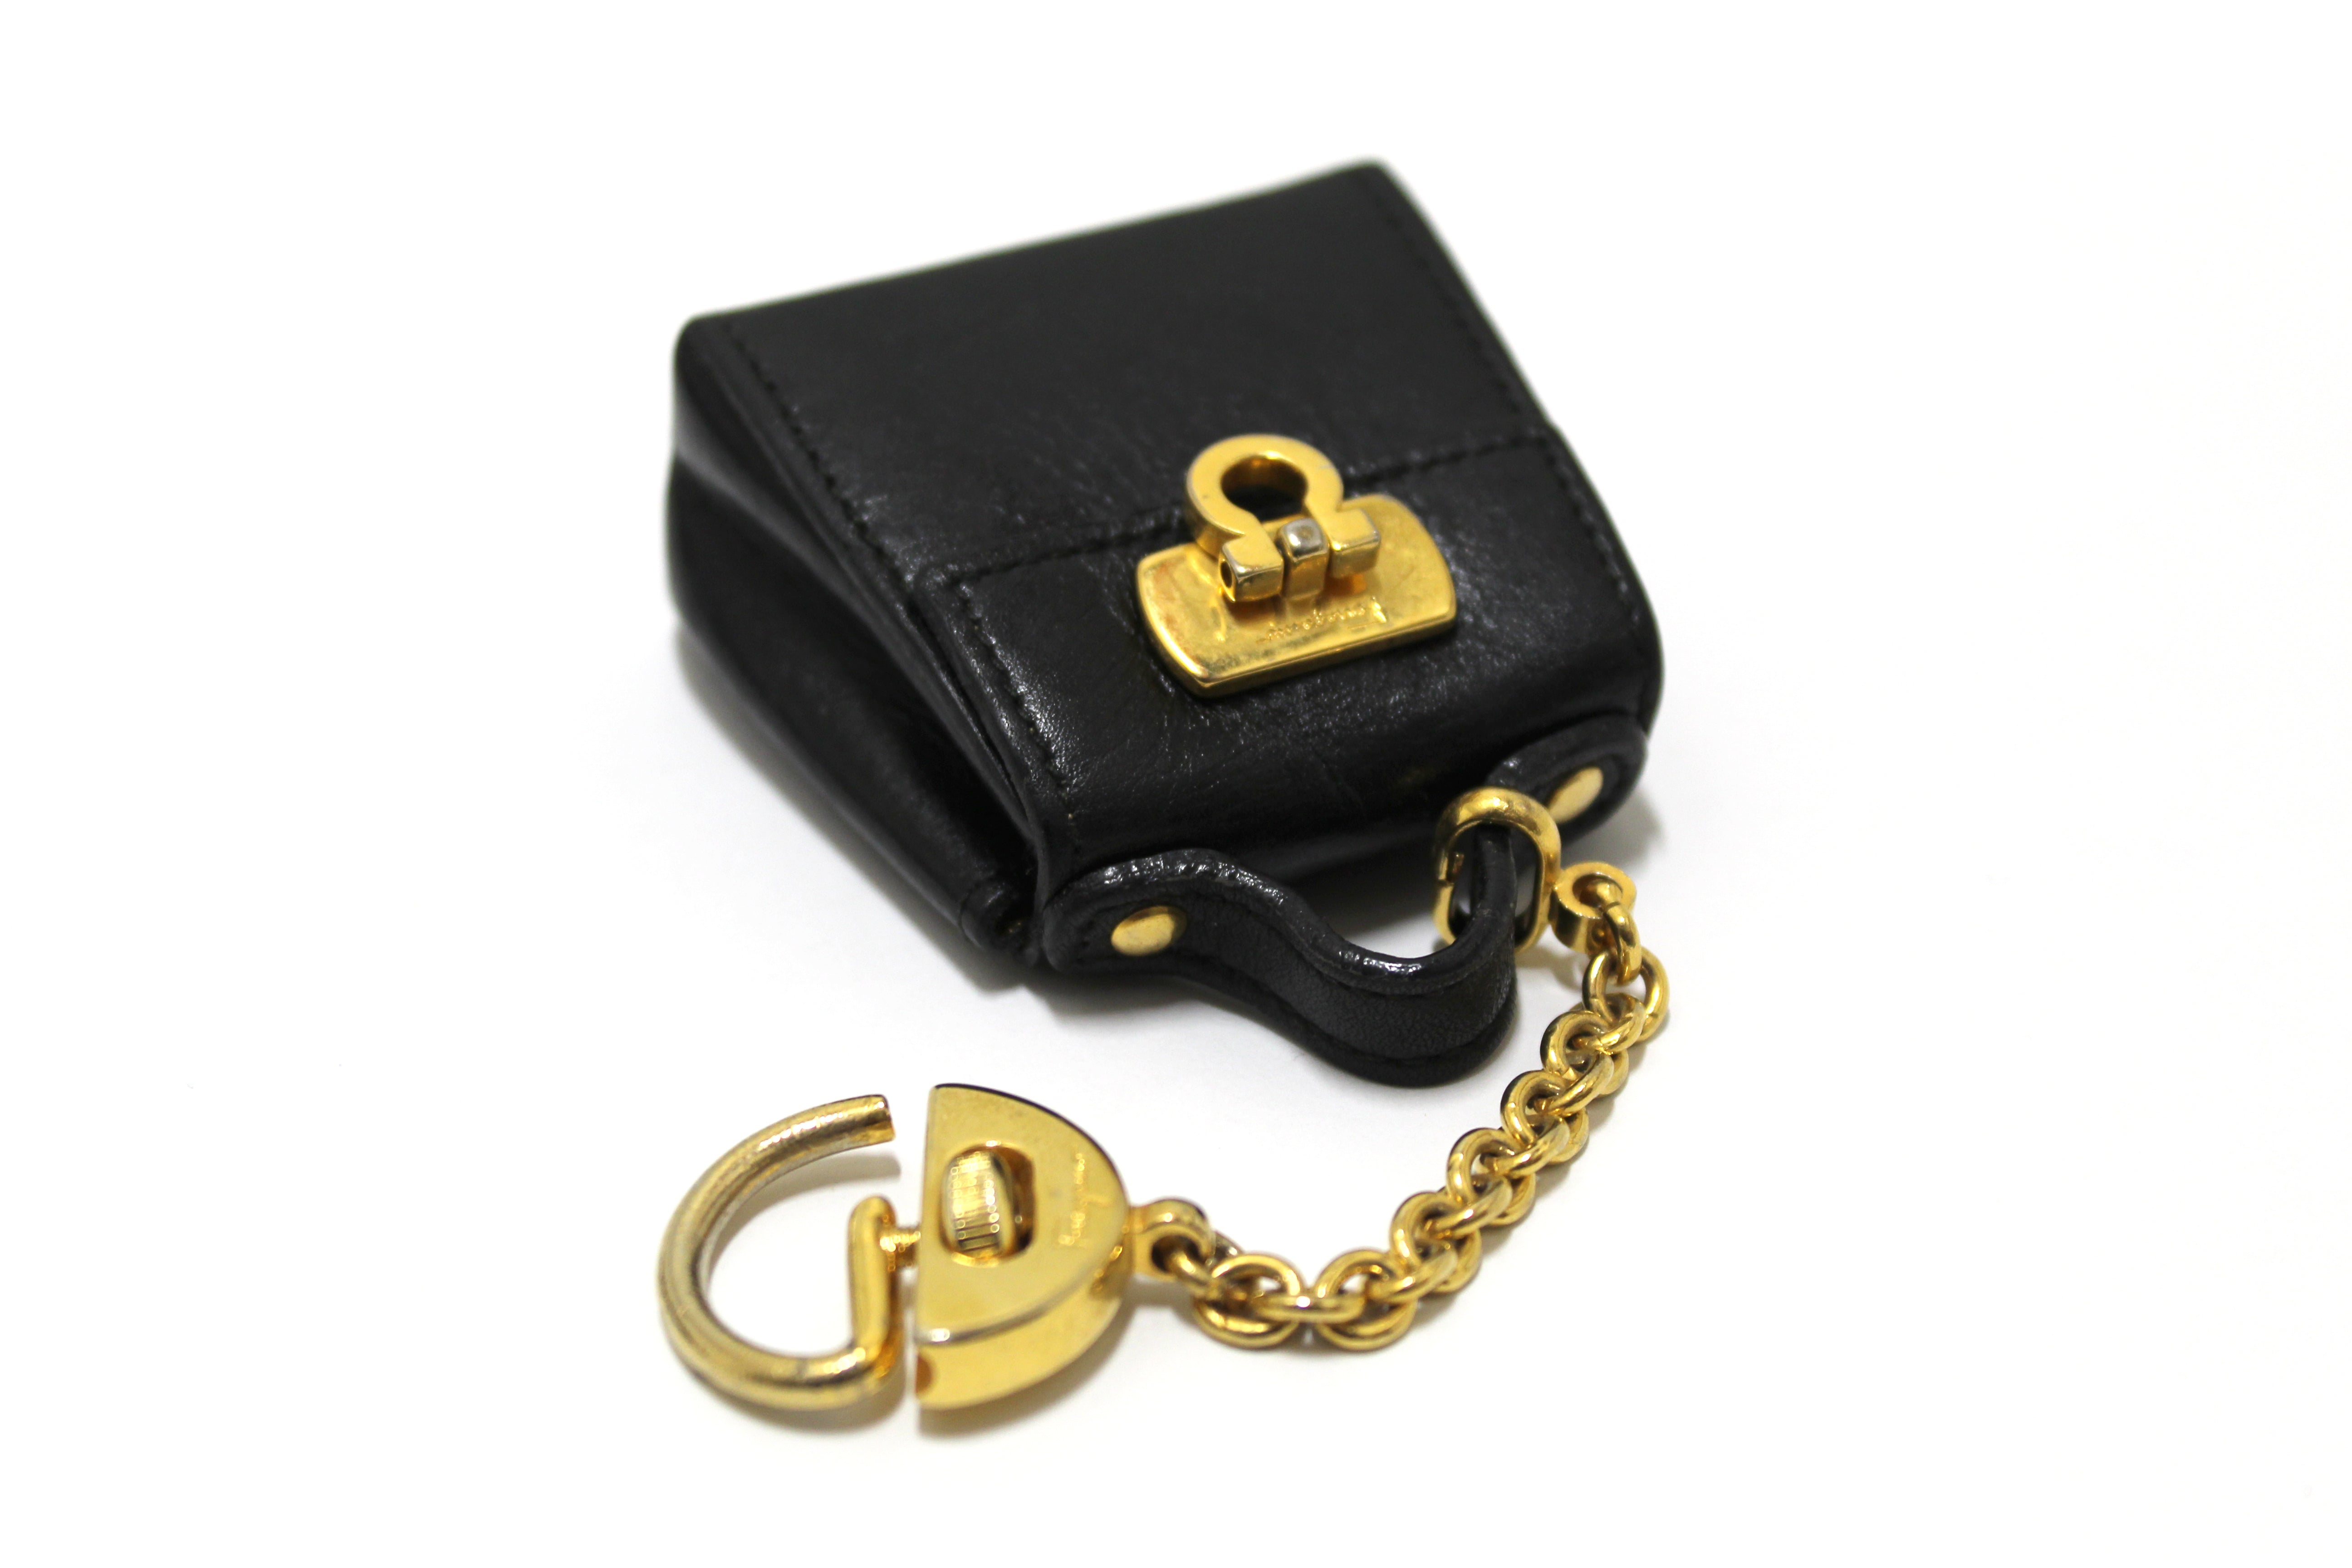 Authentic Salvatore Ferragamo Gancini Black Leather Miniature Bag Key Ring